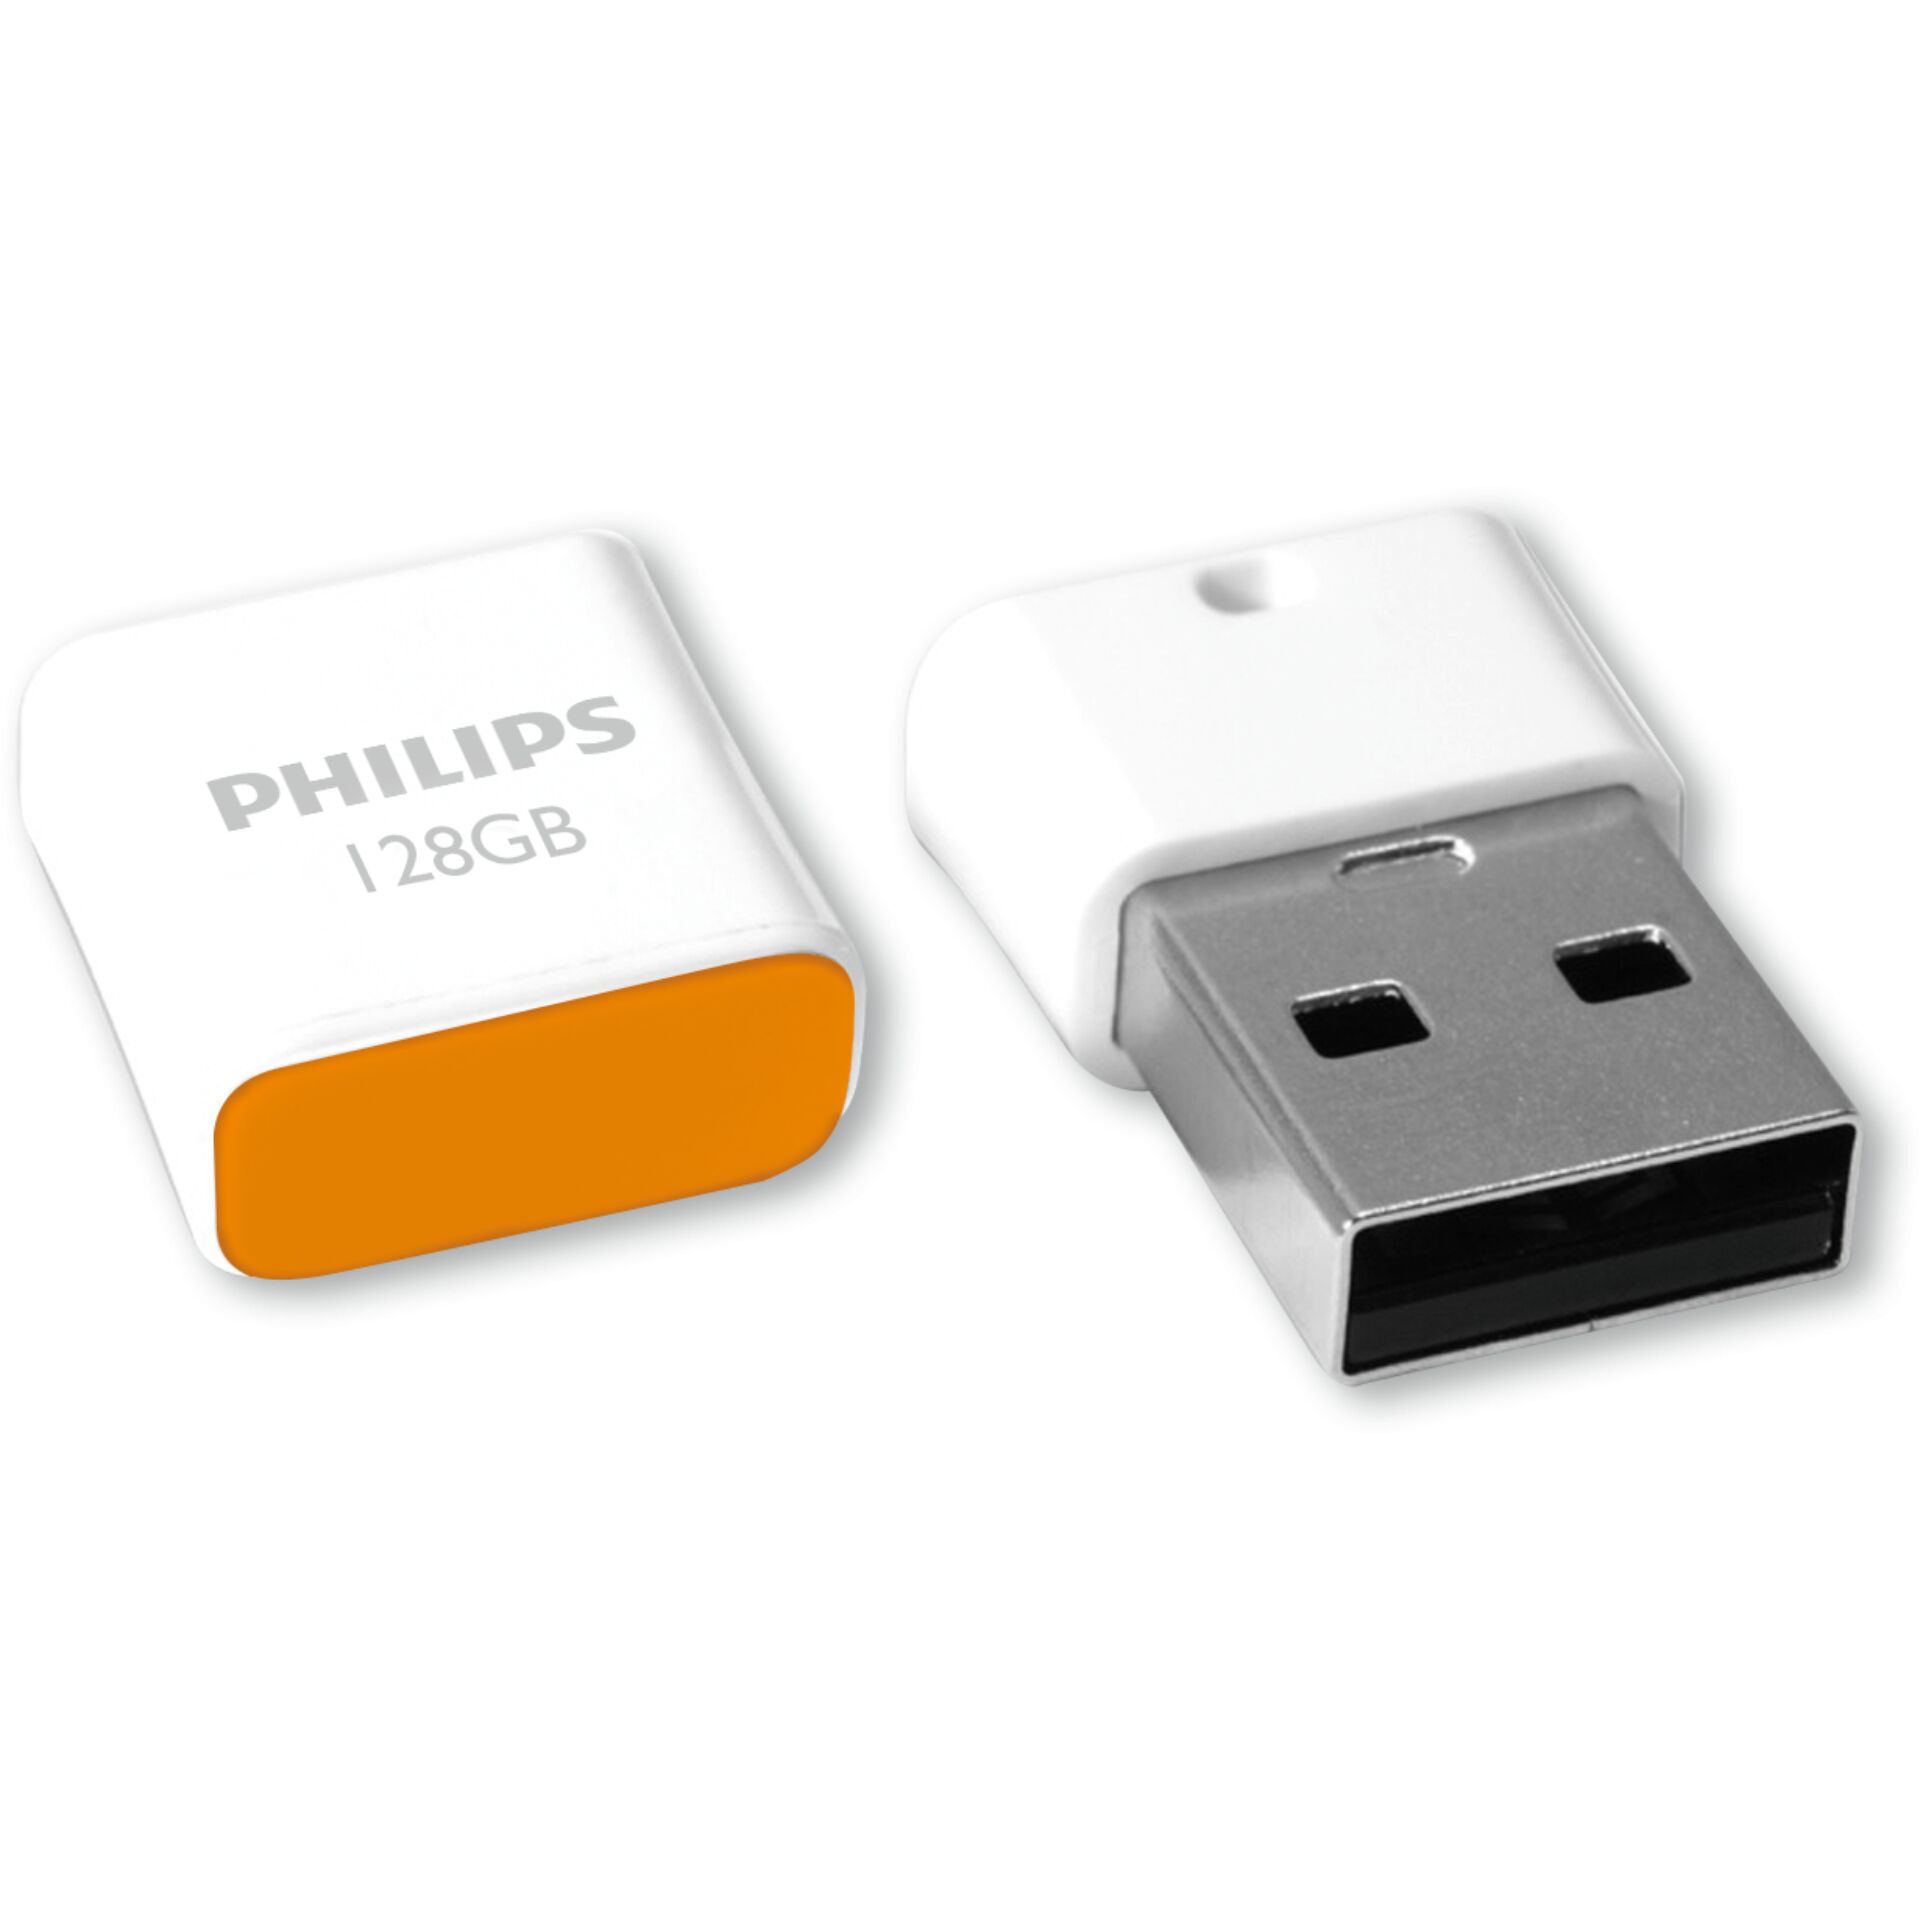 Philips USB 2.0            128GB Pico Edition Sunrise Orange